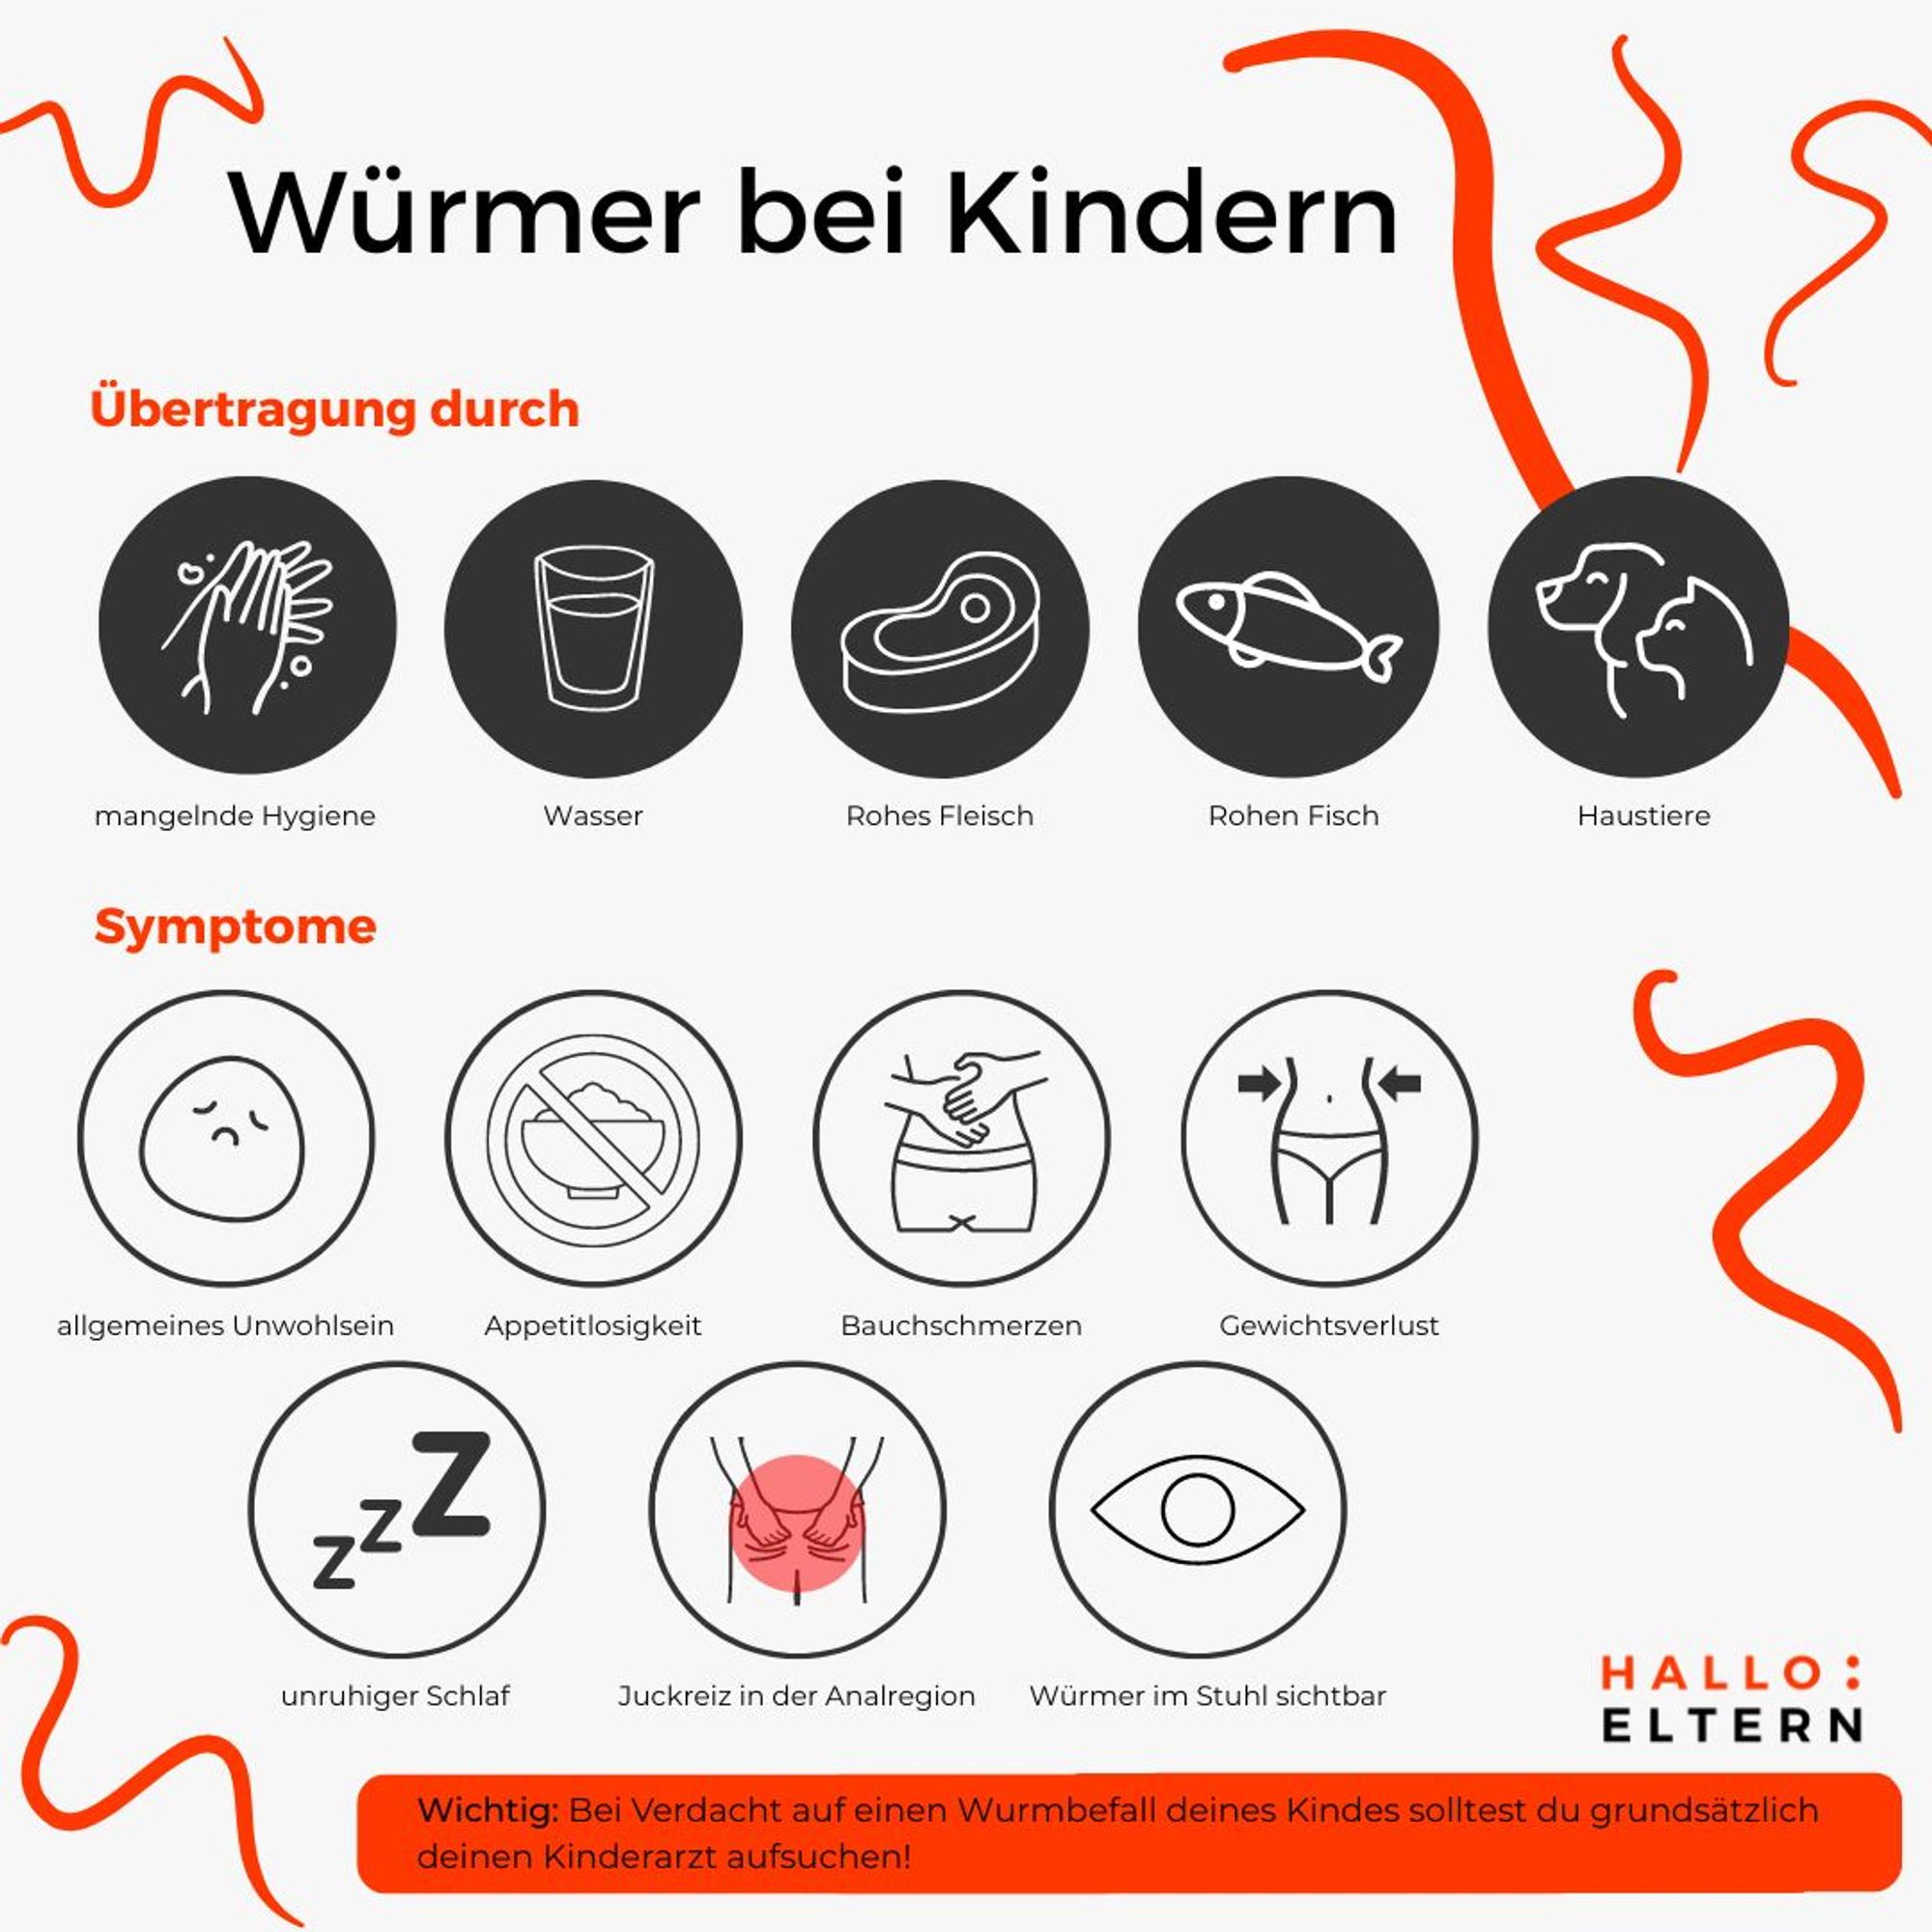 Würmer bei Kindern Übertragung und Symptome